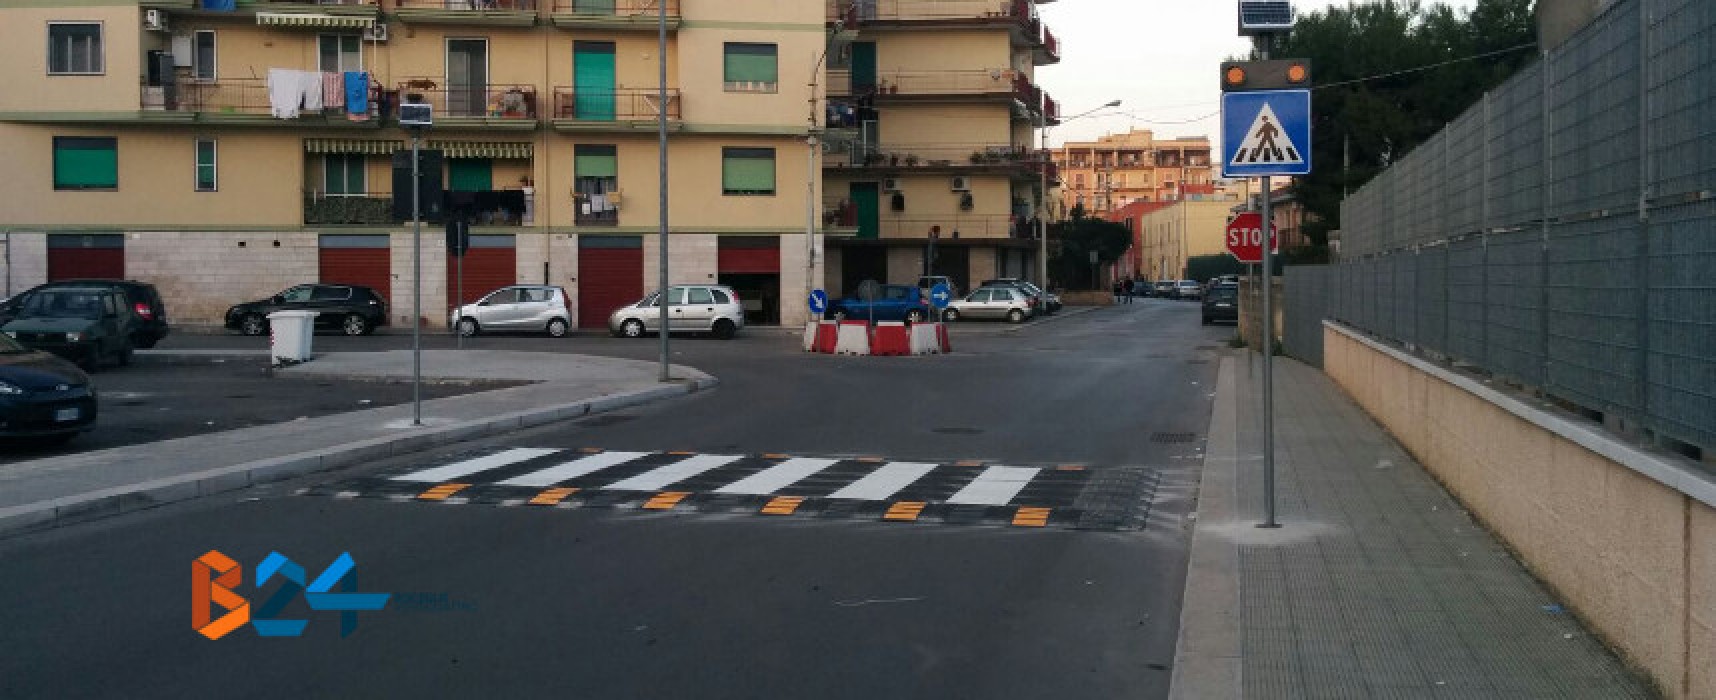 Nuovo attraversamento pedonale rialzato e rotonda in pvc in via Giovanni Paolo II